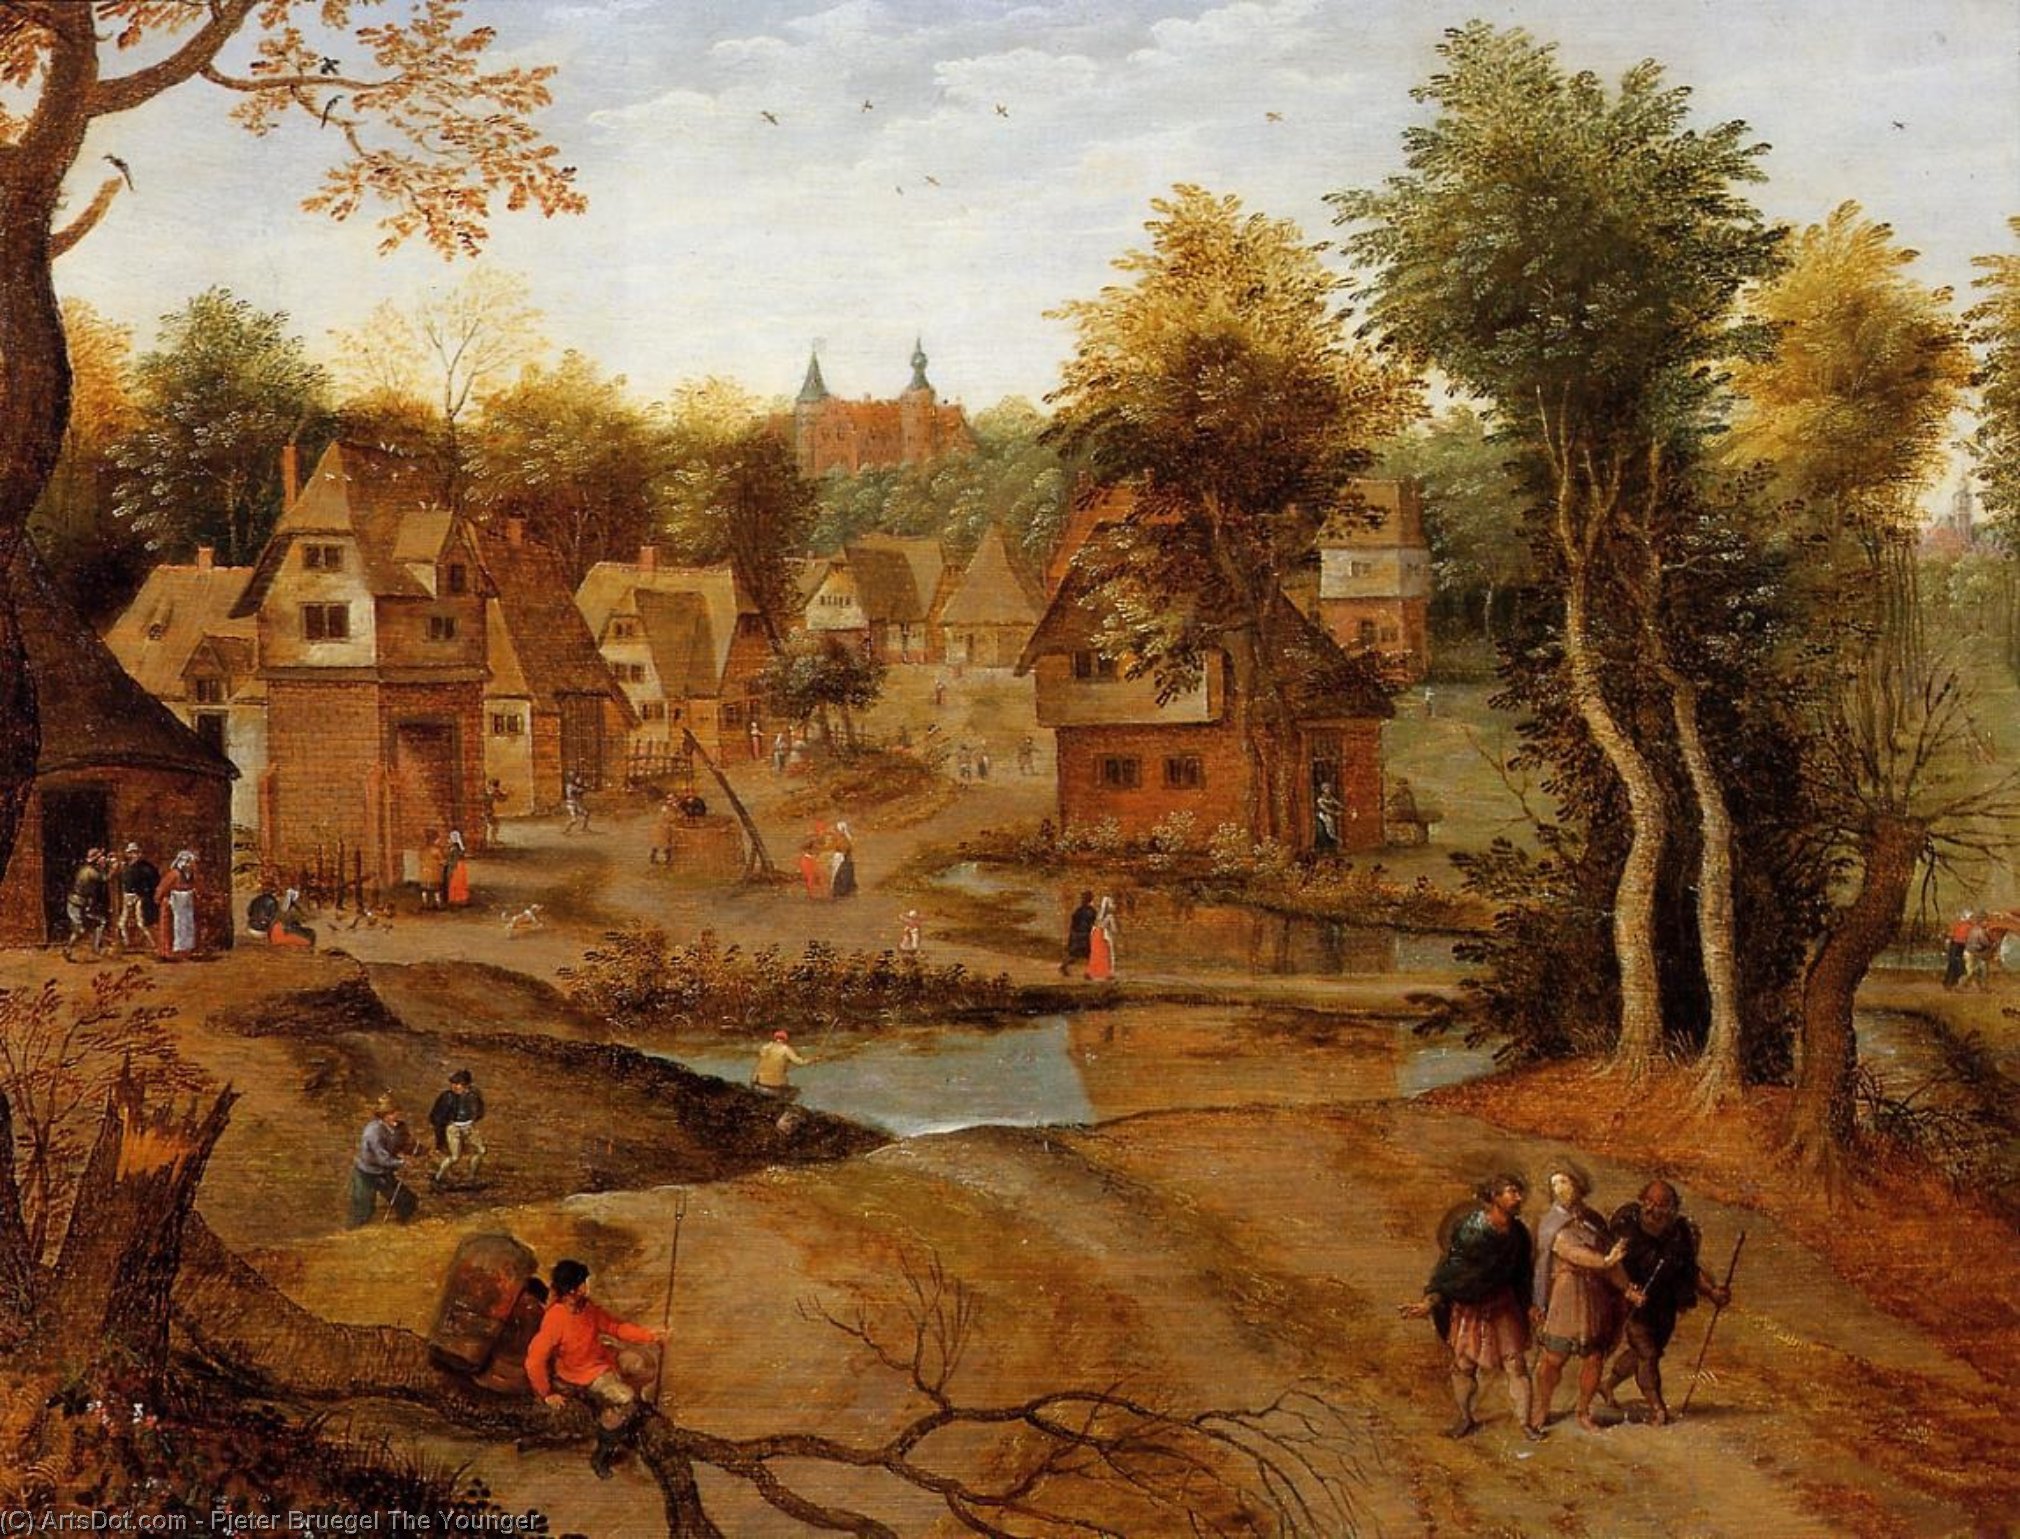 WikiOO.org - Enciklopedija likovnih umjetnosti - Slikarstvo, umjetnička djela Pieter Bruegel The Younger - Village Landscape with Ammaus Pilgrims